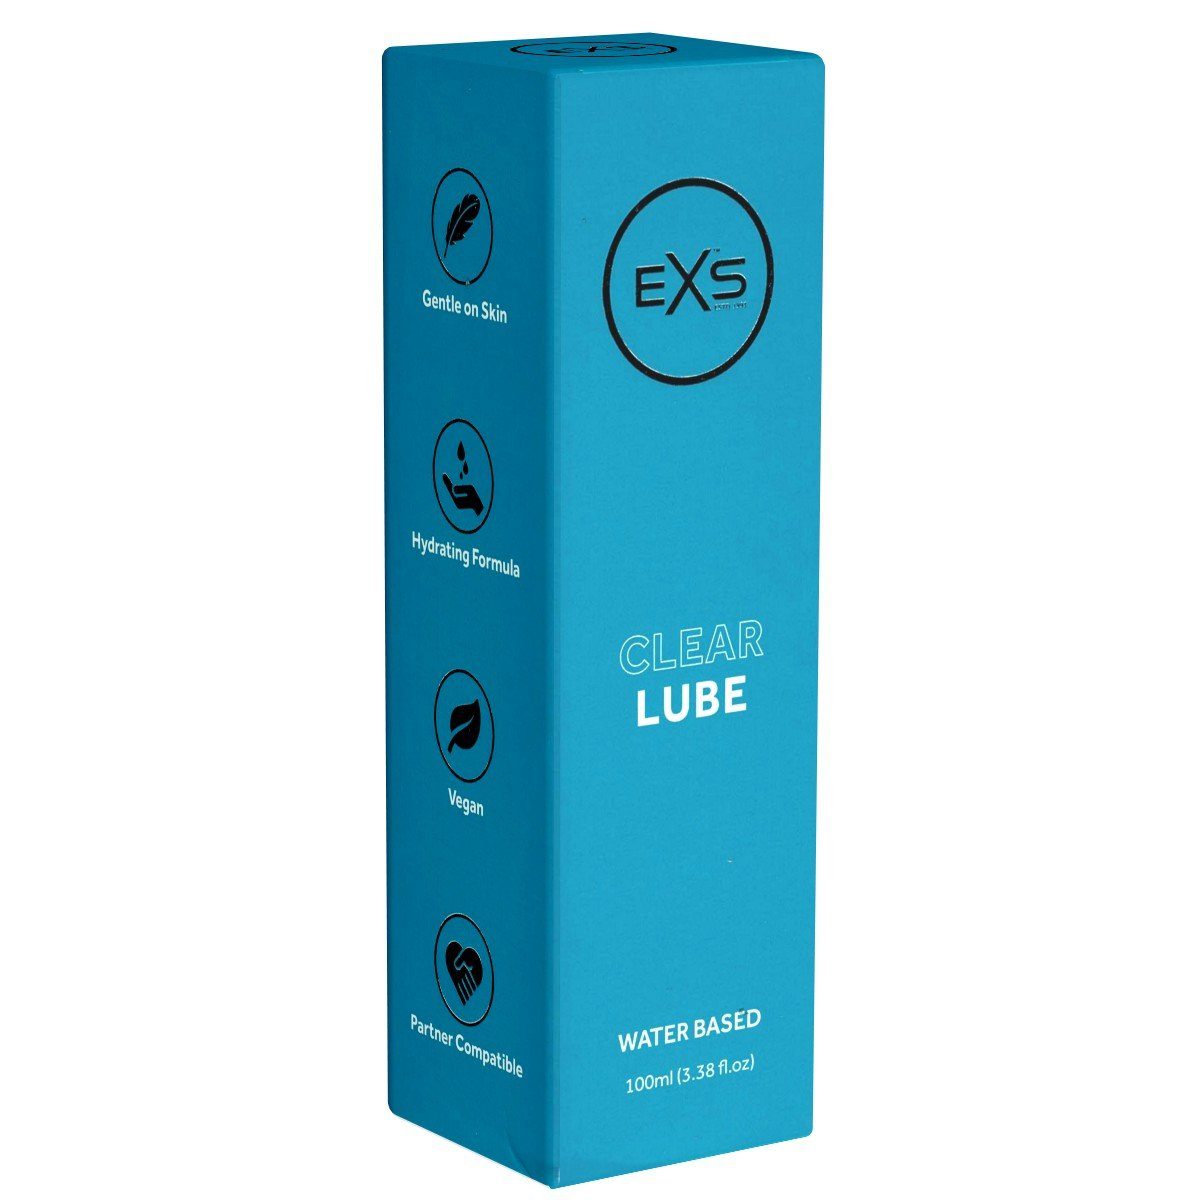 EXS Gleitgel Clear Lube - parabenfreies Gleitgel, Flasche mit 100ml, transparent, hypoallergen, lange gleitfähig